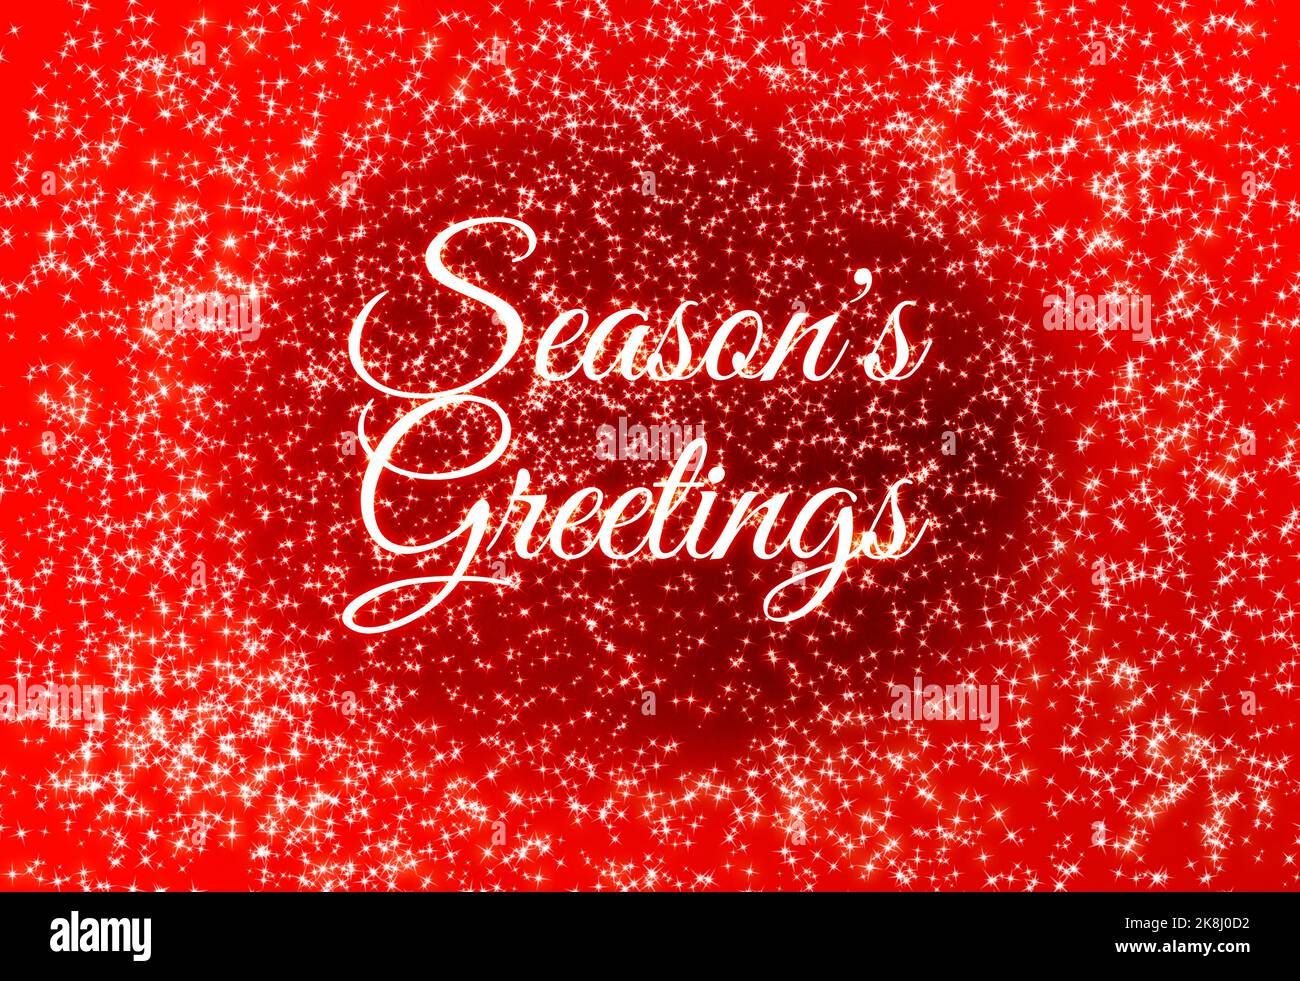 Grußtext der Saison mit Weihnachtssternen auf rotem Hintergrund. Weihnachtsfeier Konzept. Stockfoto